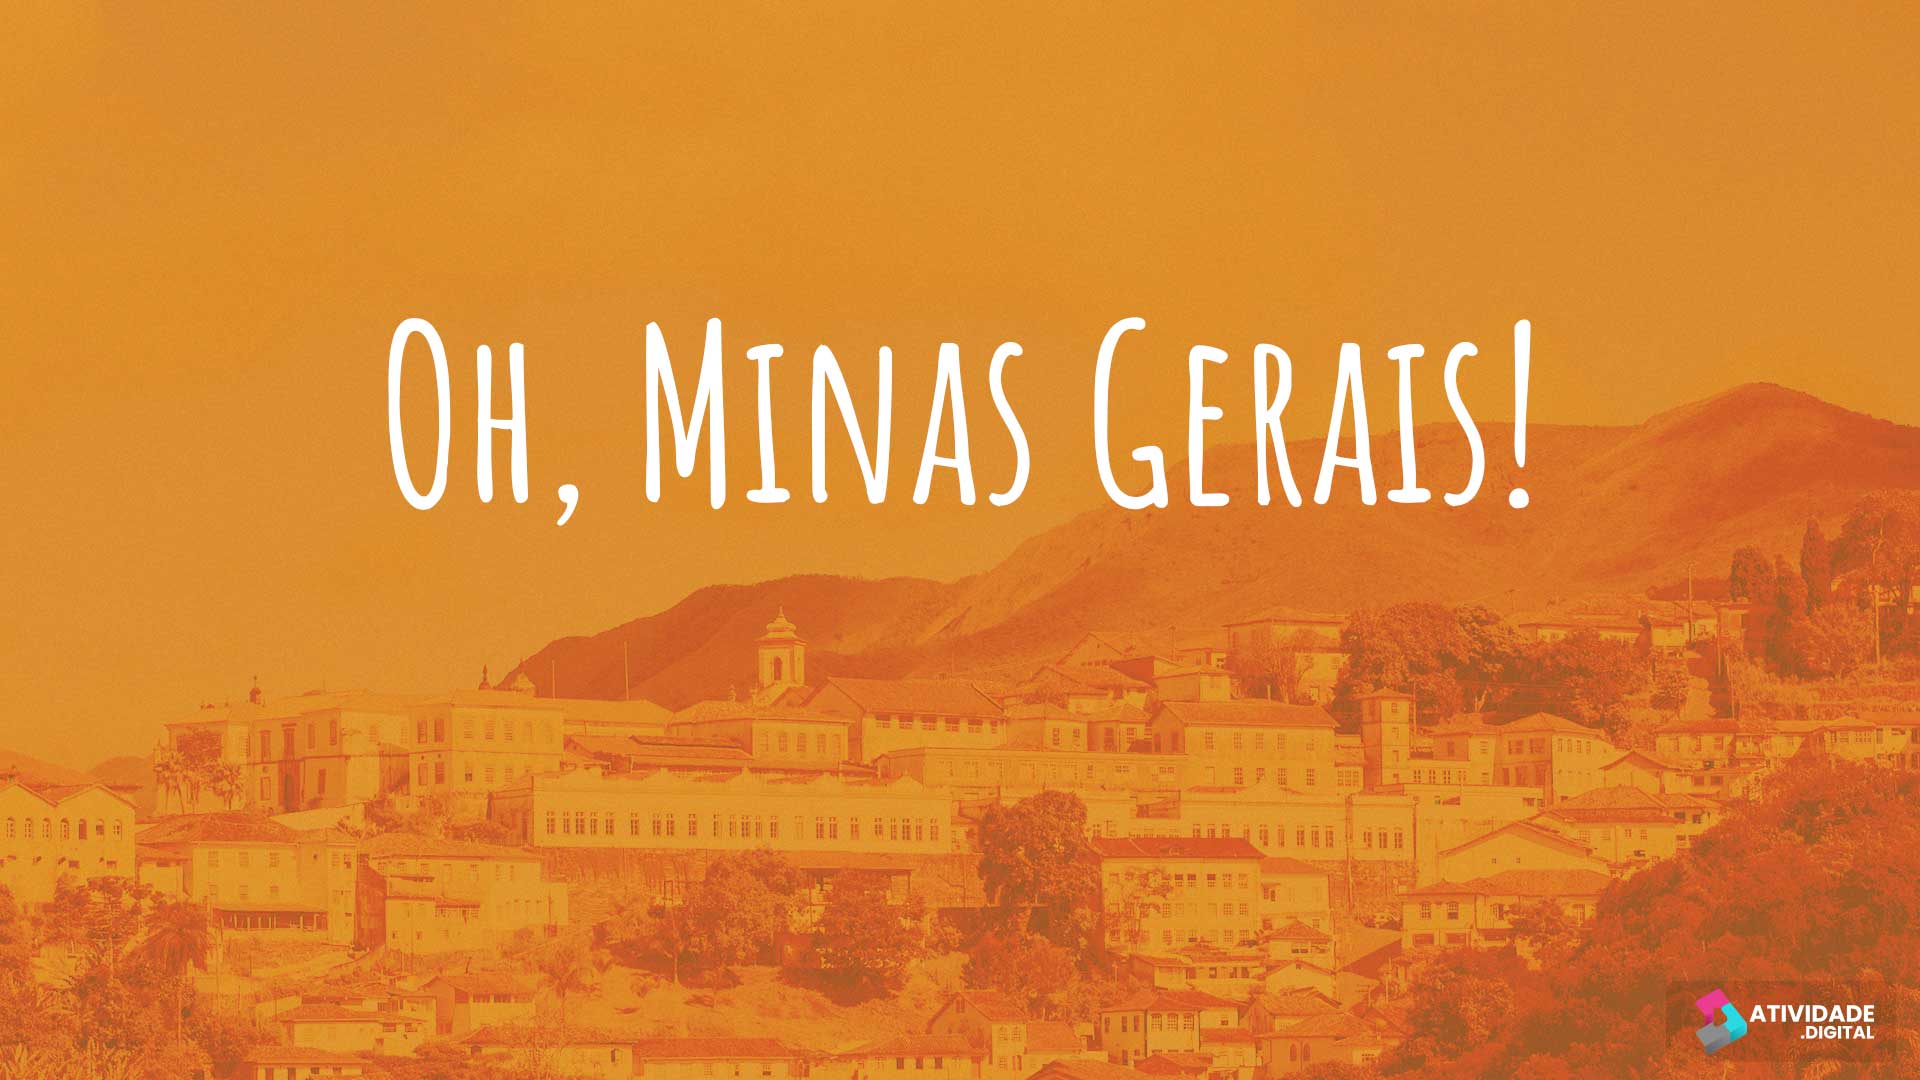 Oh, Minas Gerais!